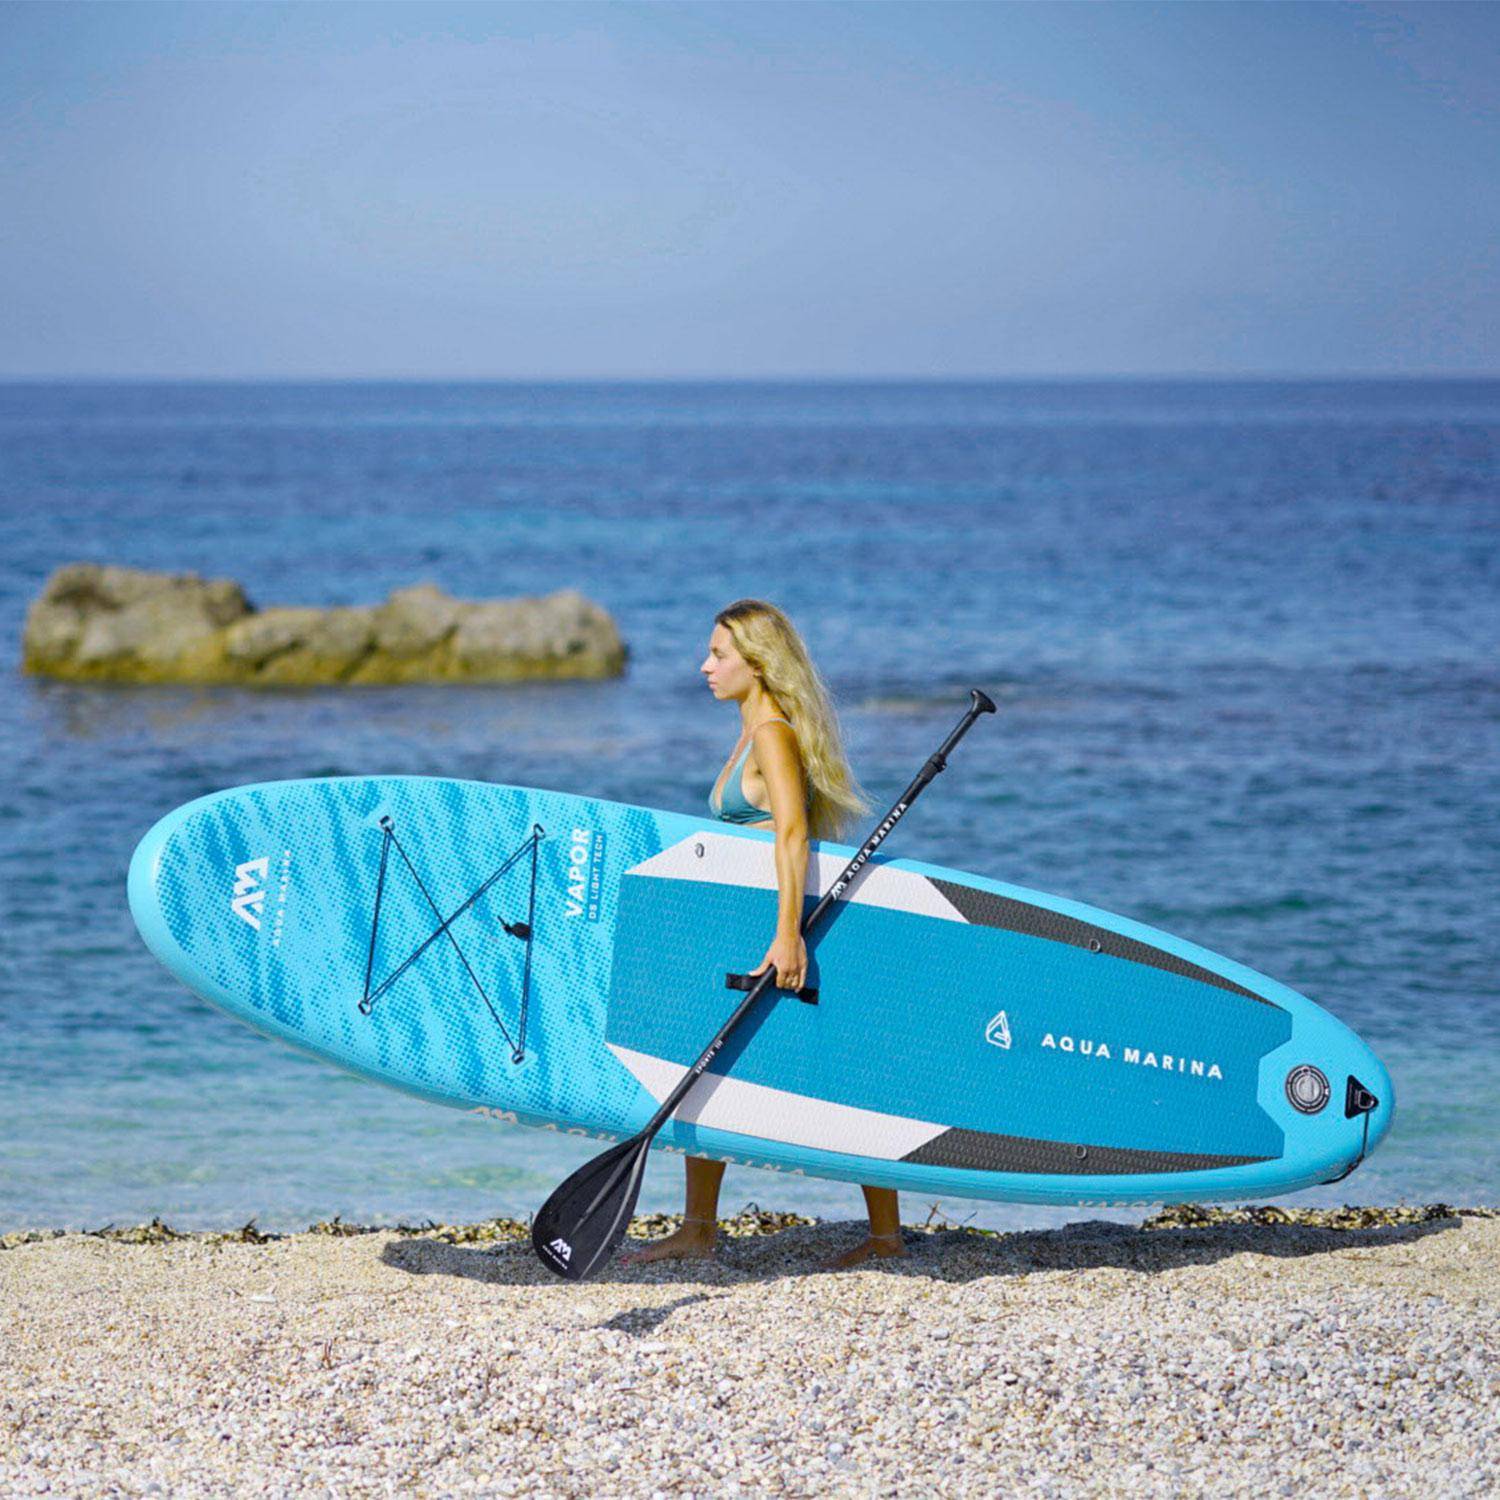 Pack stand up paddle gonflable Vapor 10'4" avec pompe haute pression double action, pagaie, leash et sac de rangement inclus Photo9